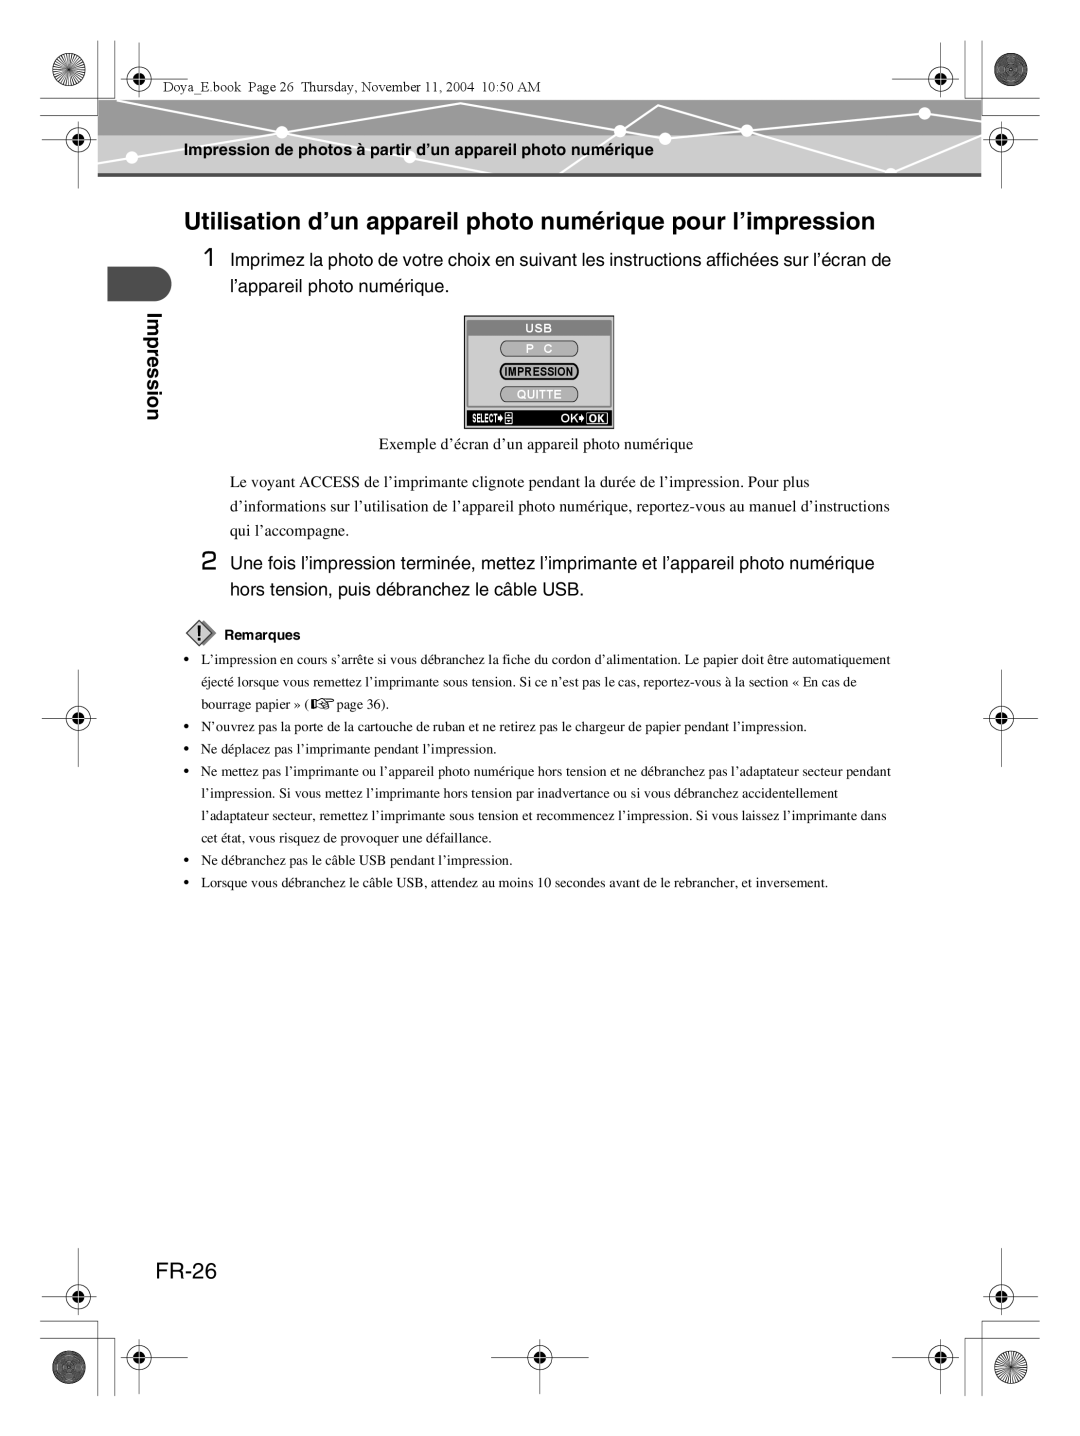 Olympus P-S100 user manual Utilisation d’un appareil photo numérique pour l’impression, FR-26, Impression 